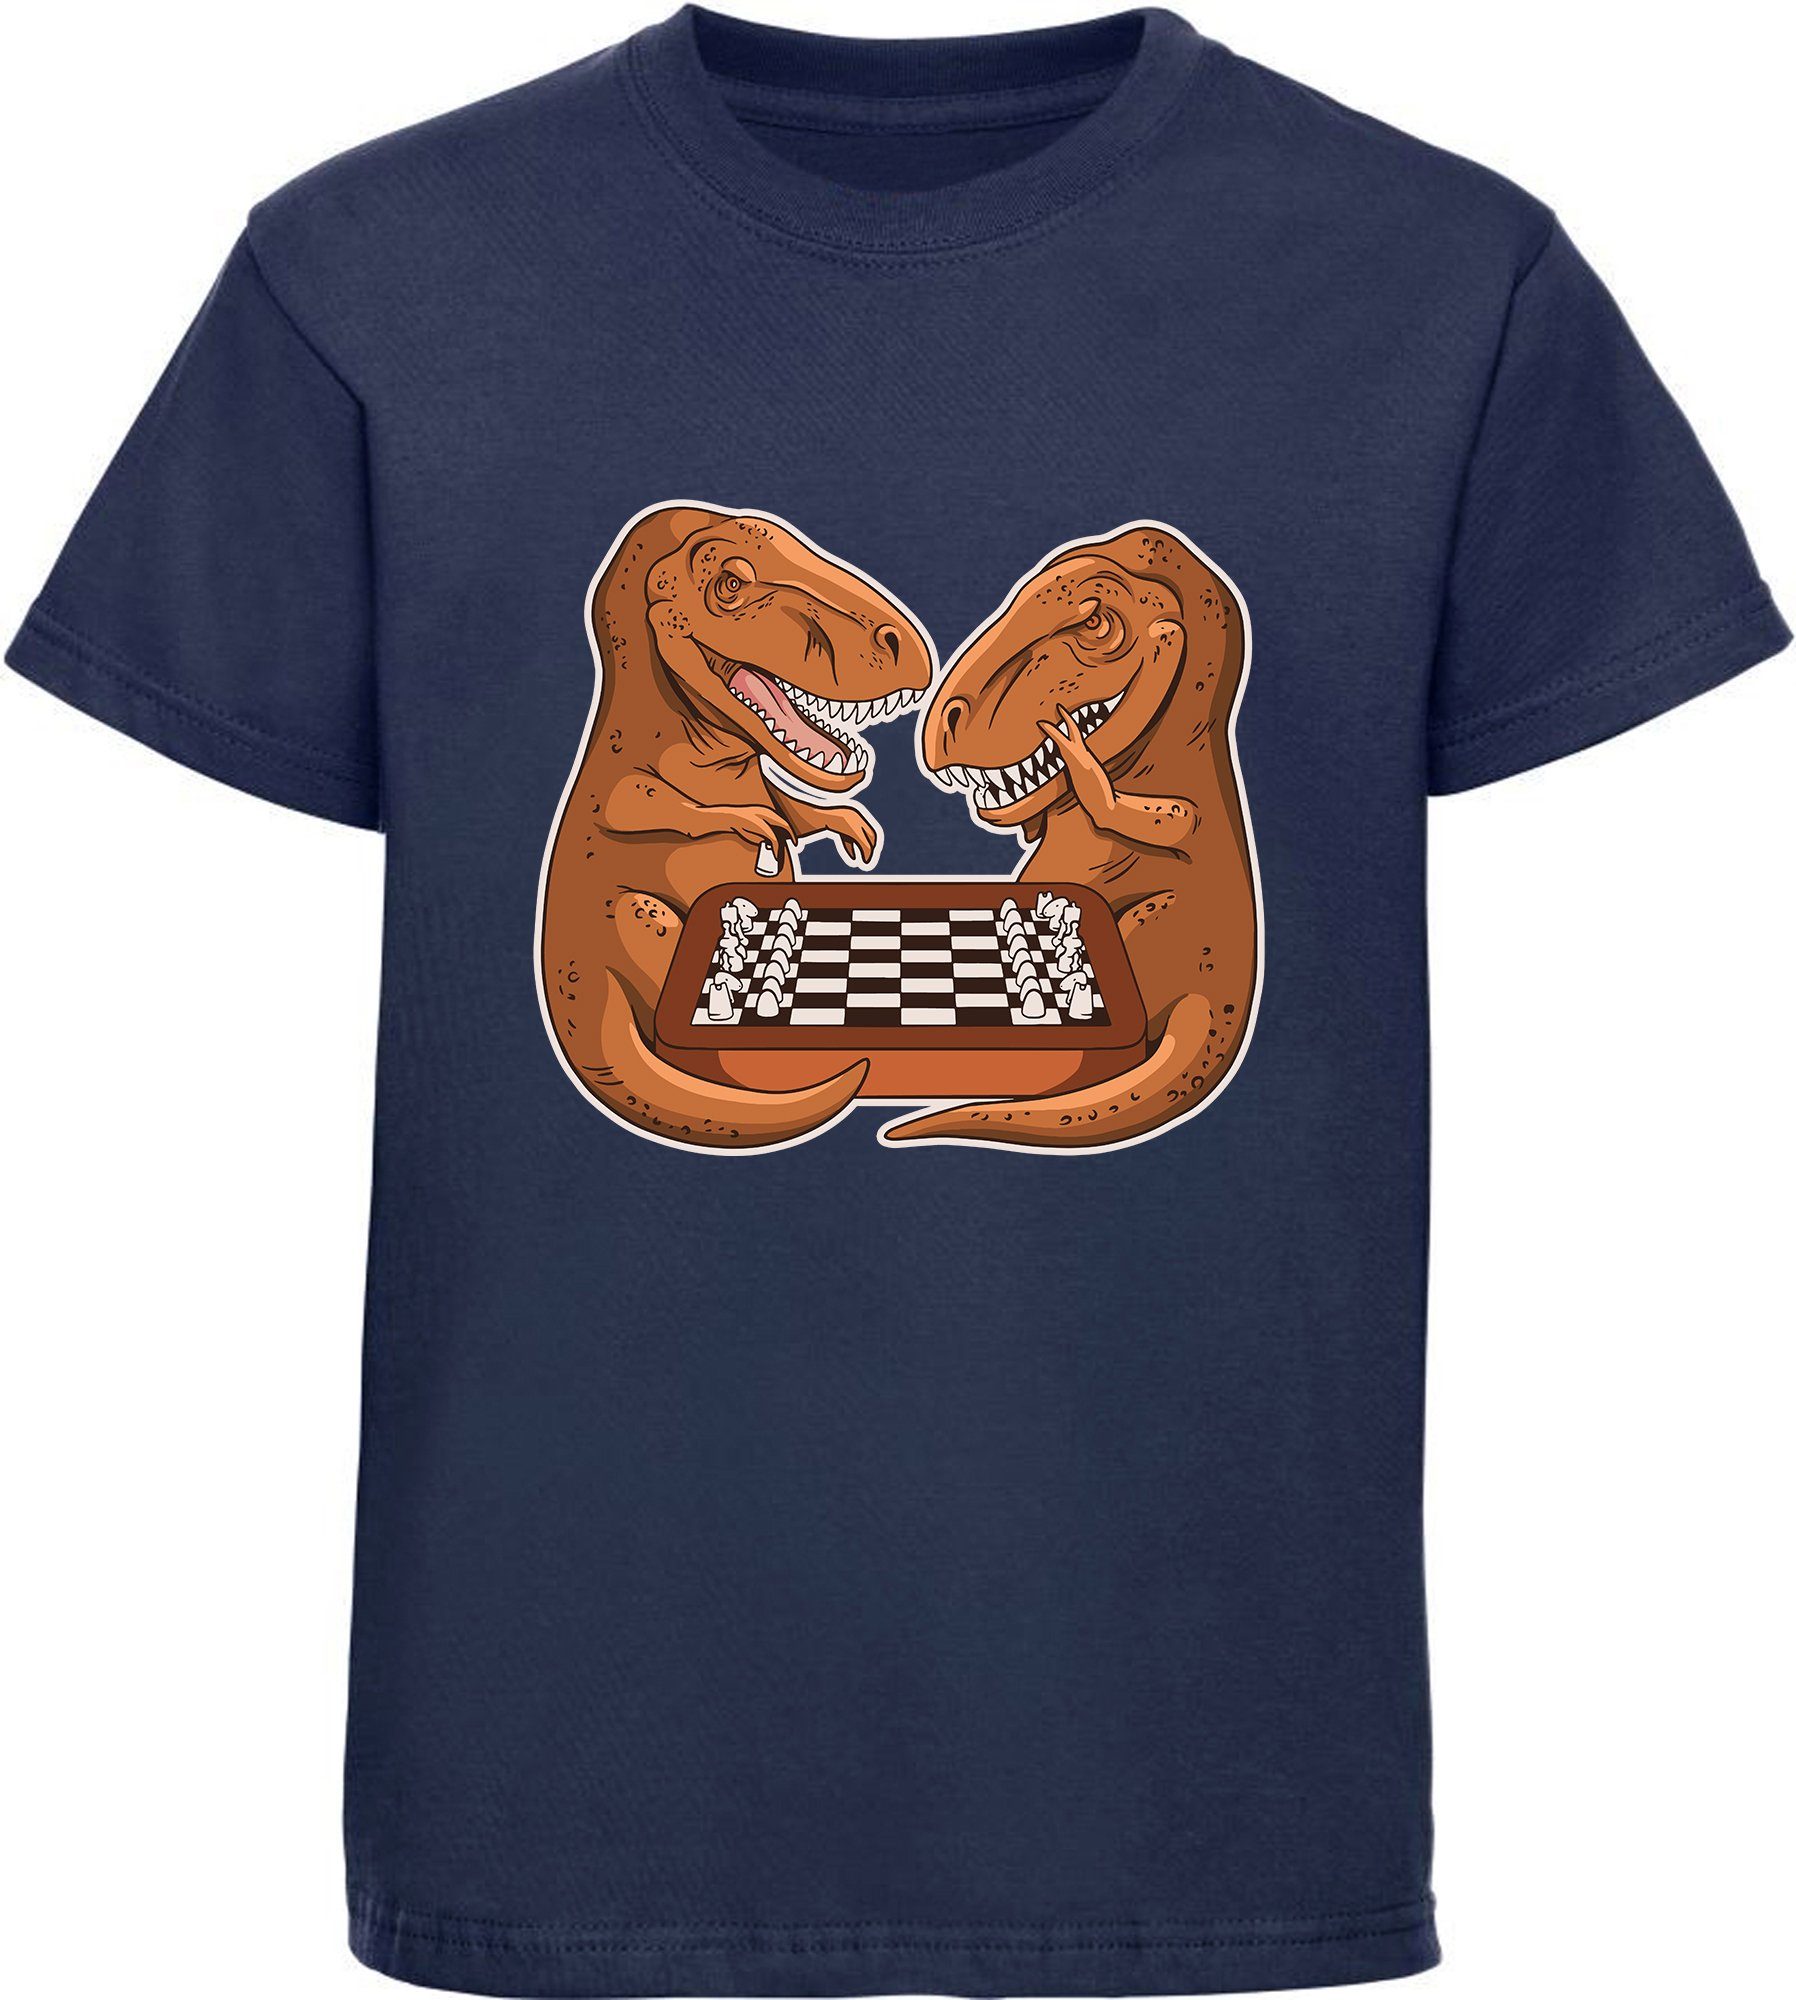 Dino, Schach mit blau schwarz, bedrucktes navy weiß, rot, Kinder MyDesign24 blau, T-Shirt i67 beim mit Print-Shirt Baumwollshirt T-Rex